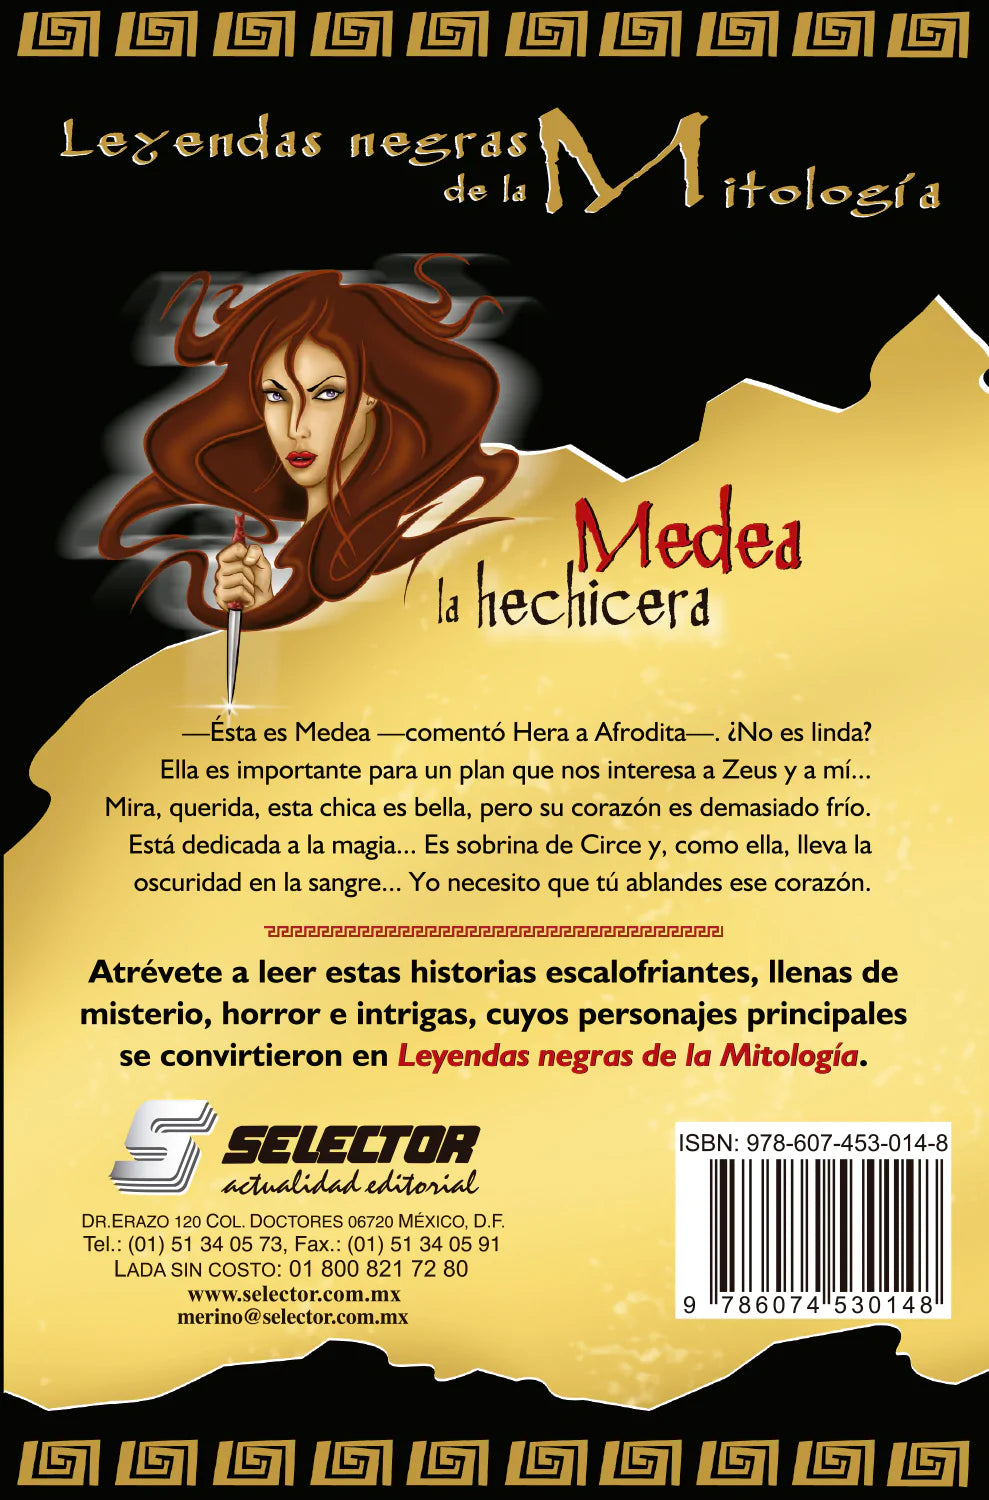 Medea la hechicera - Editorial Selector